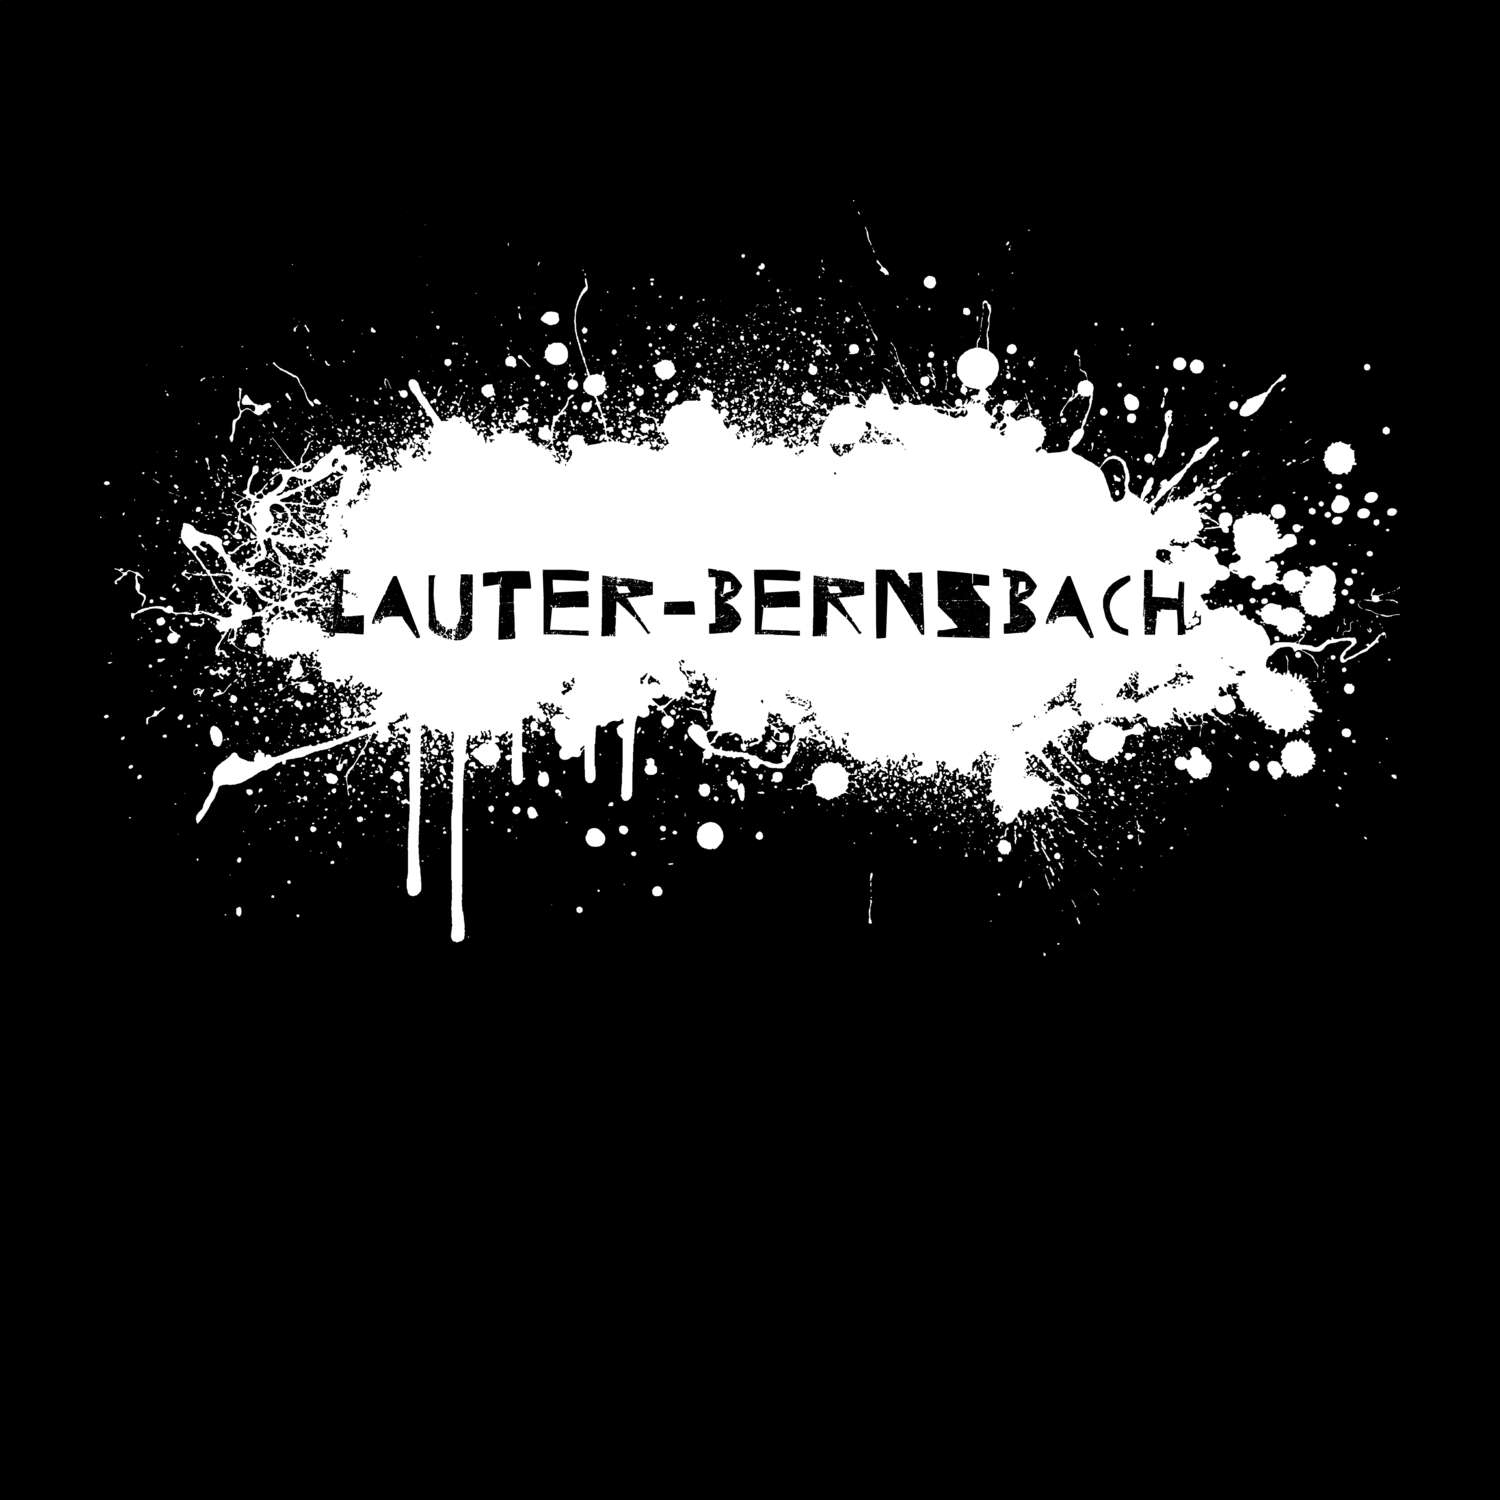 Lauter-Bernsbach T-Shirt »Paint Splash Punk«